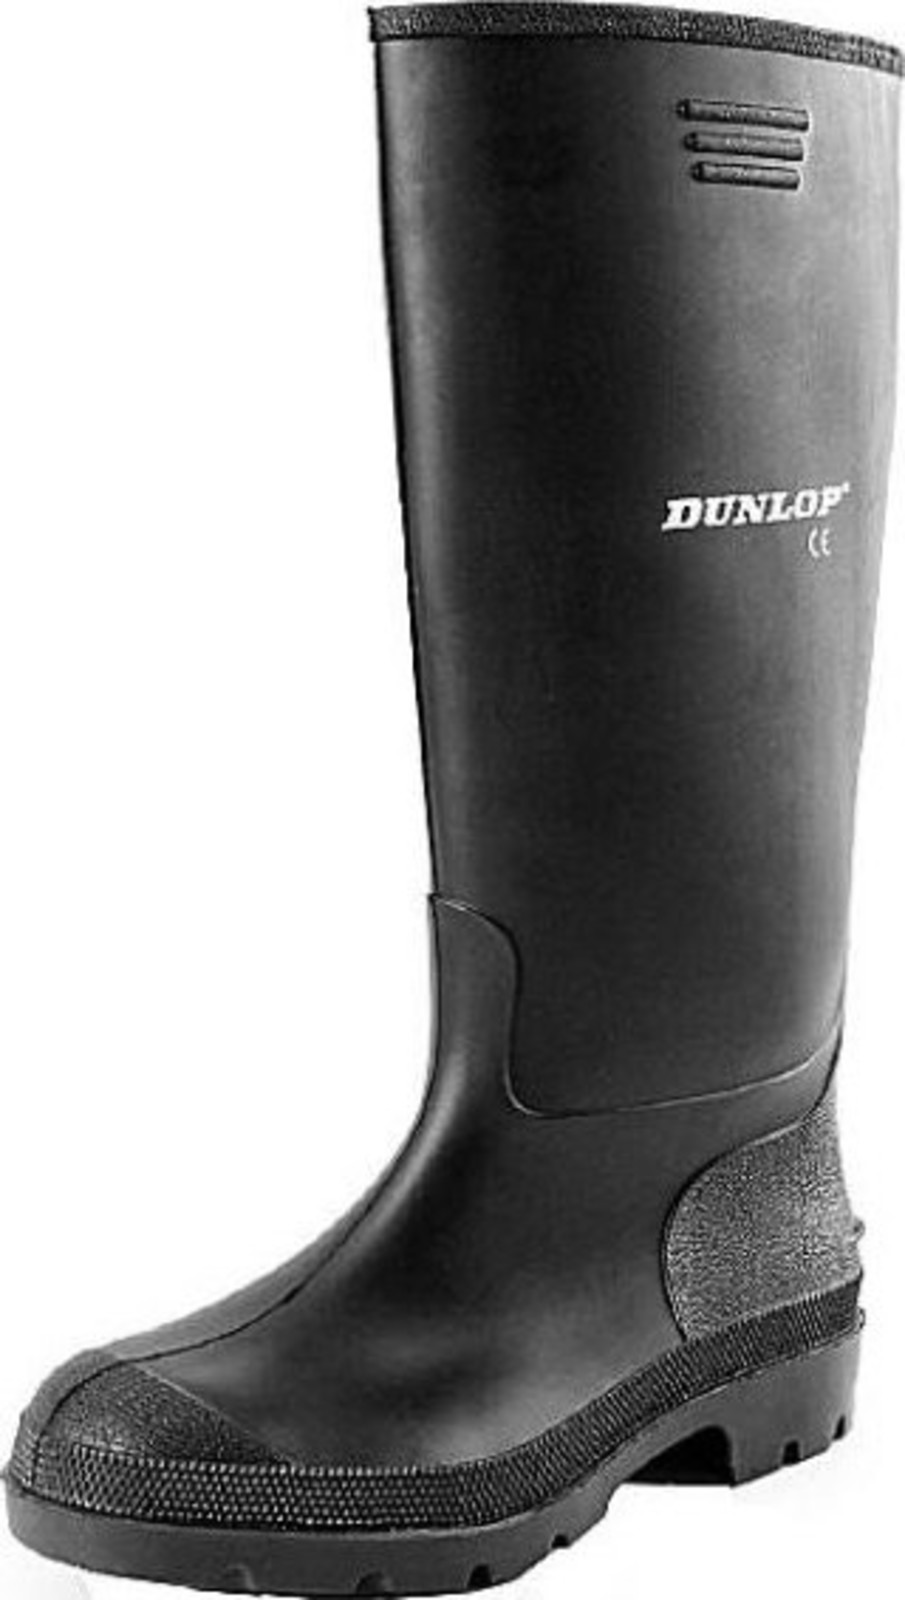 Gumáky Dunlop Preismeister PVC - veľkosť: 47, farba: čierna